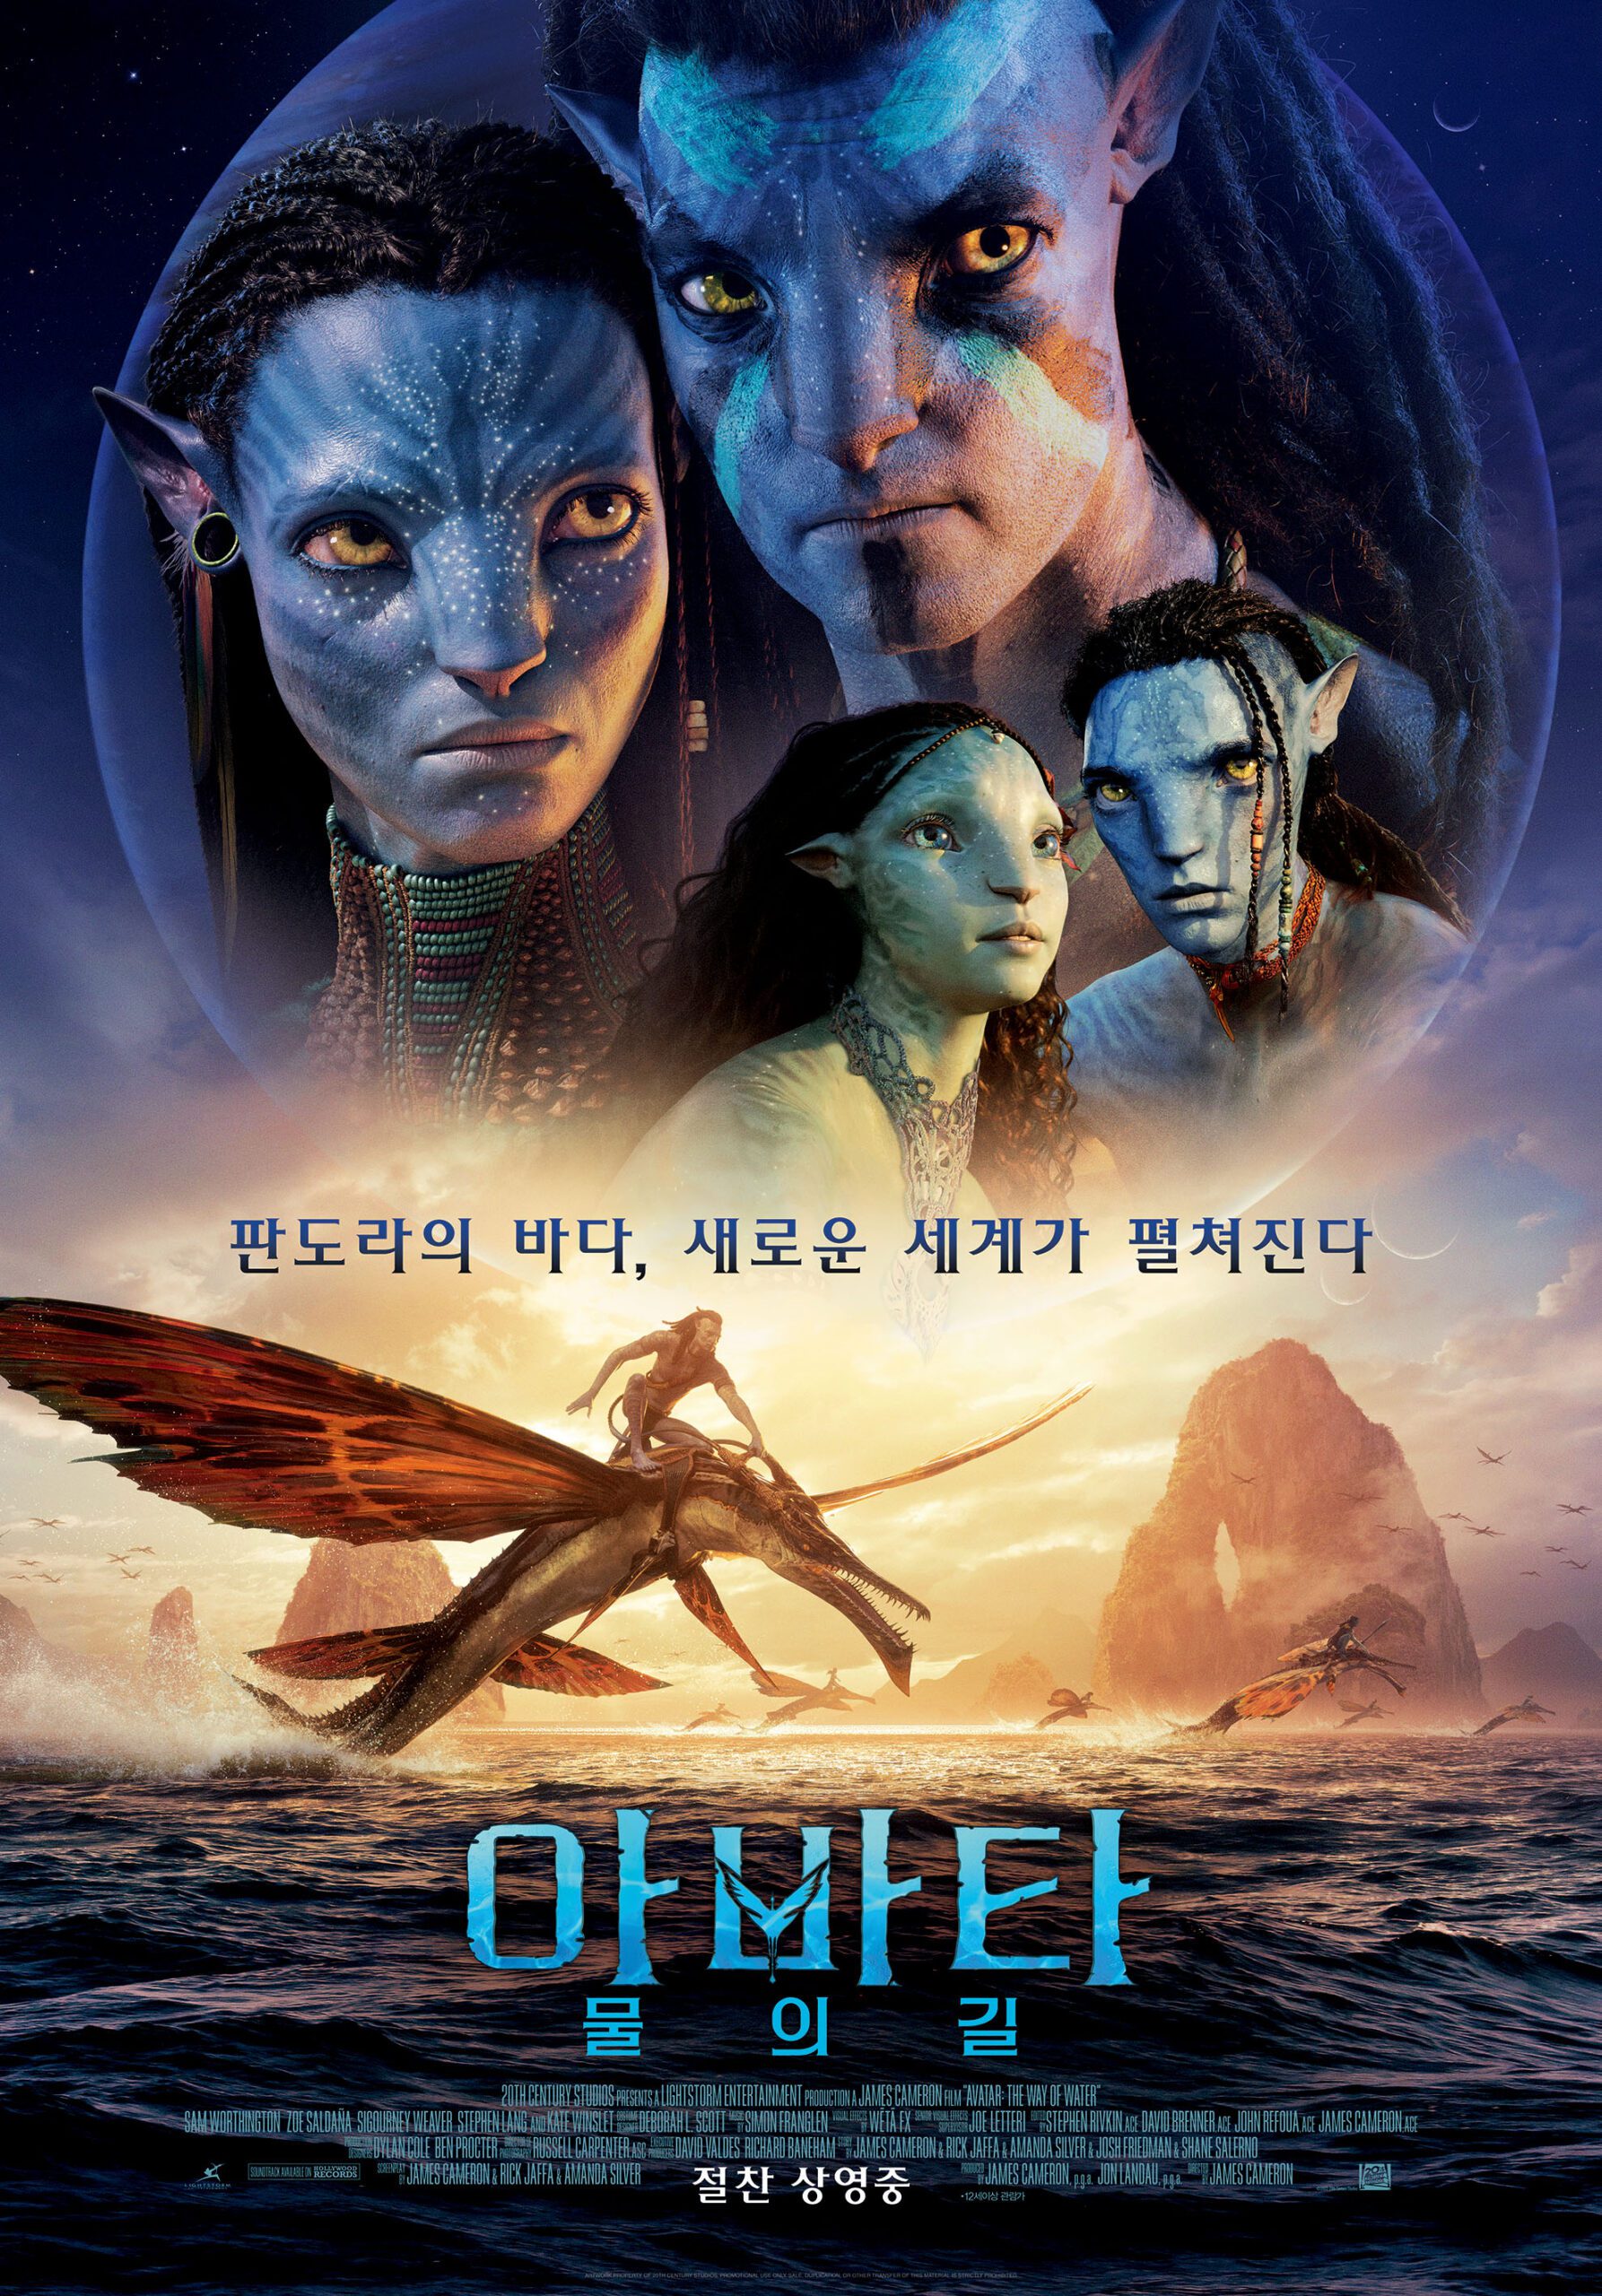 액션장르 영화 “아바타: 물의 길” 개봉소식